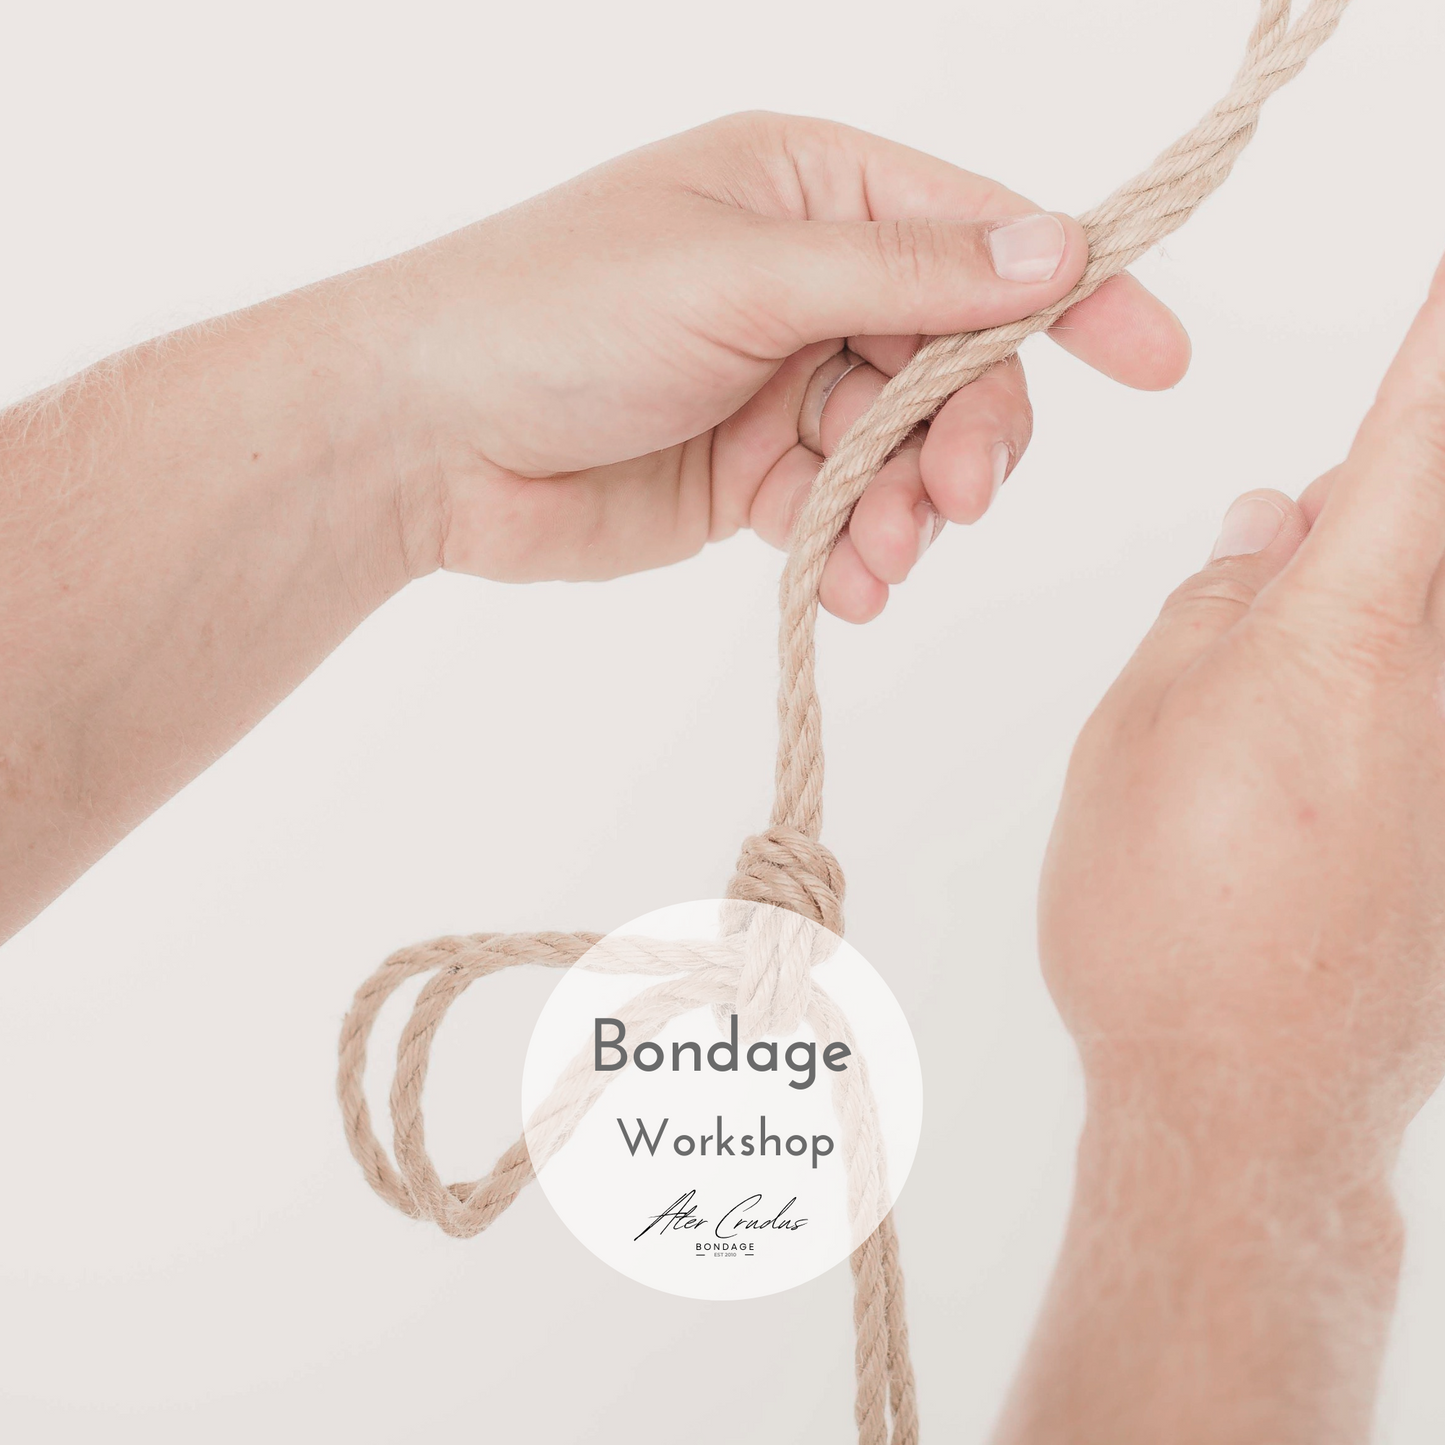 Weihnachtsgeschenk Bondage Seile inkl. Bondage Workshop mit Ater Crudus